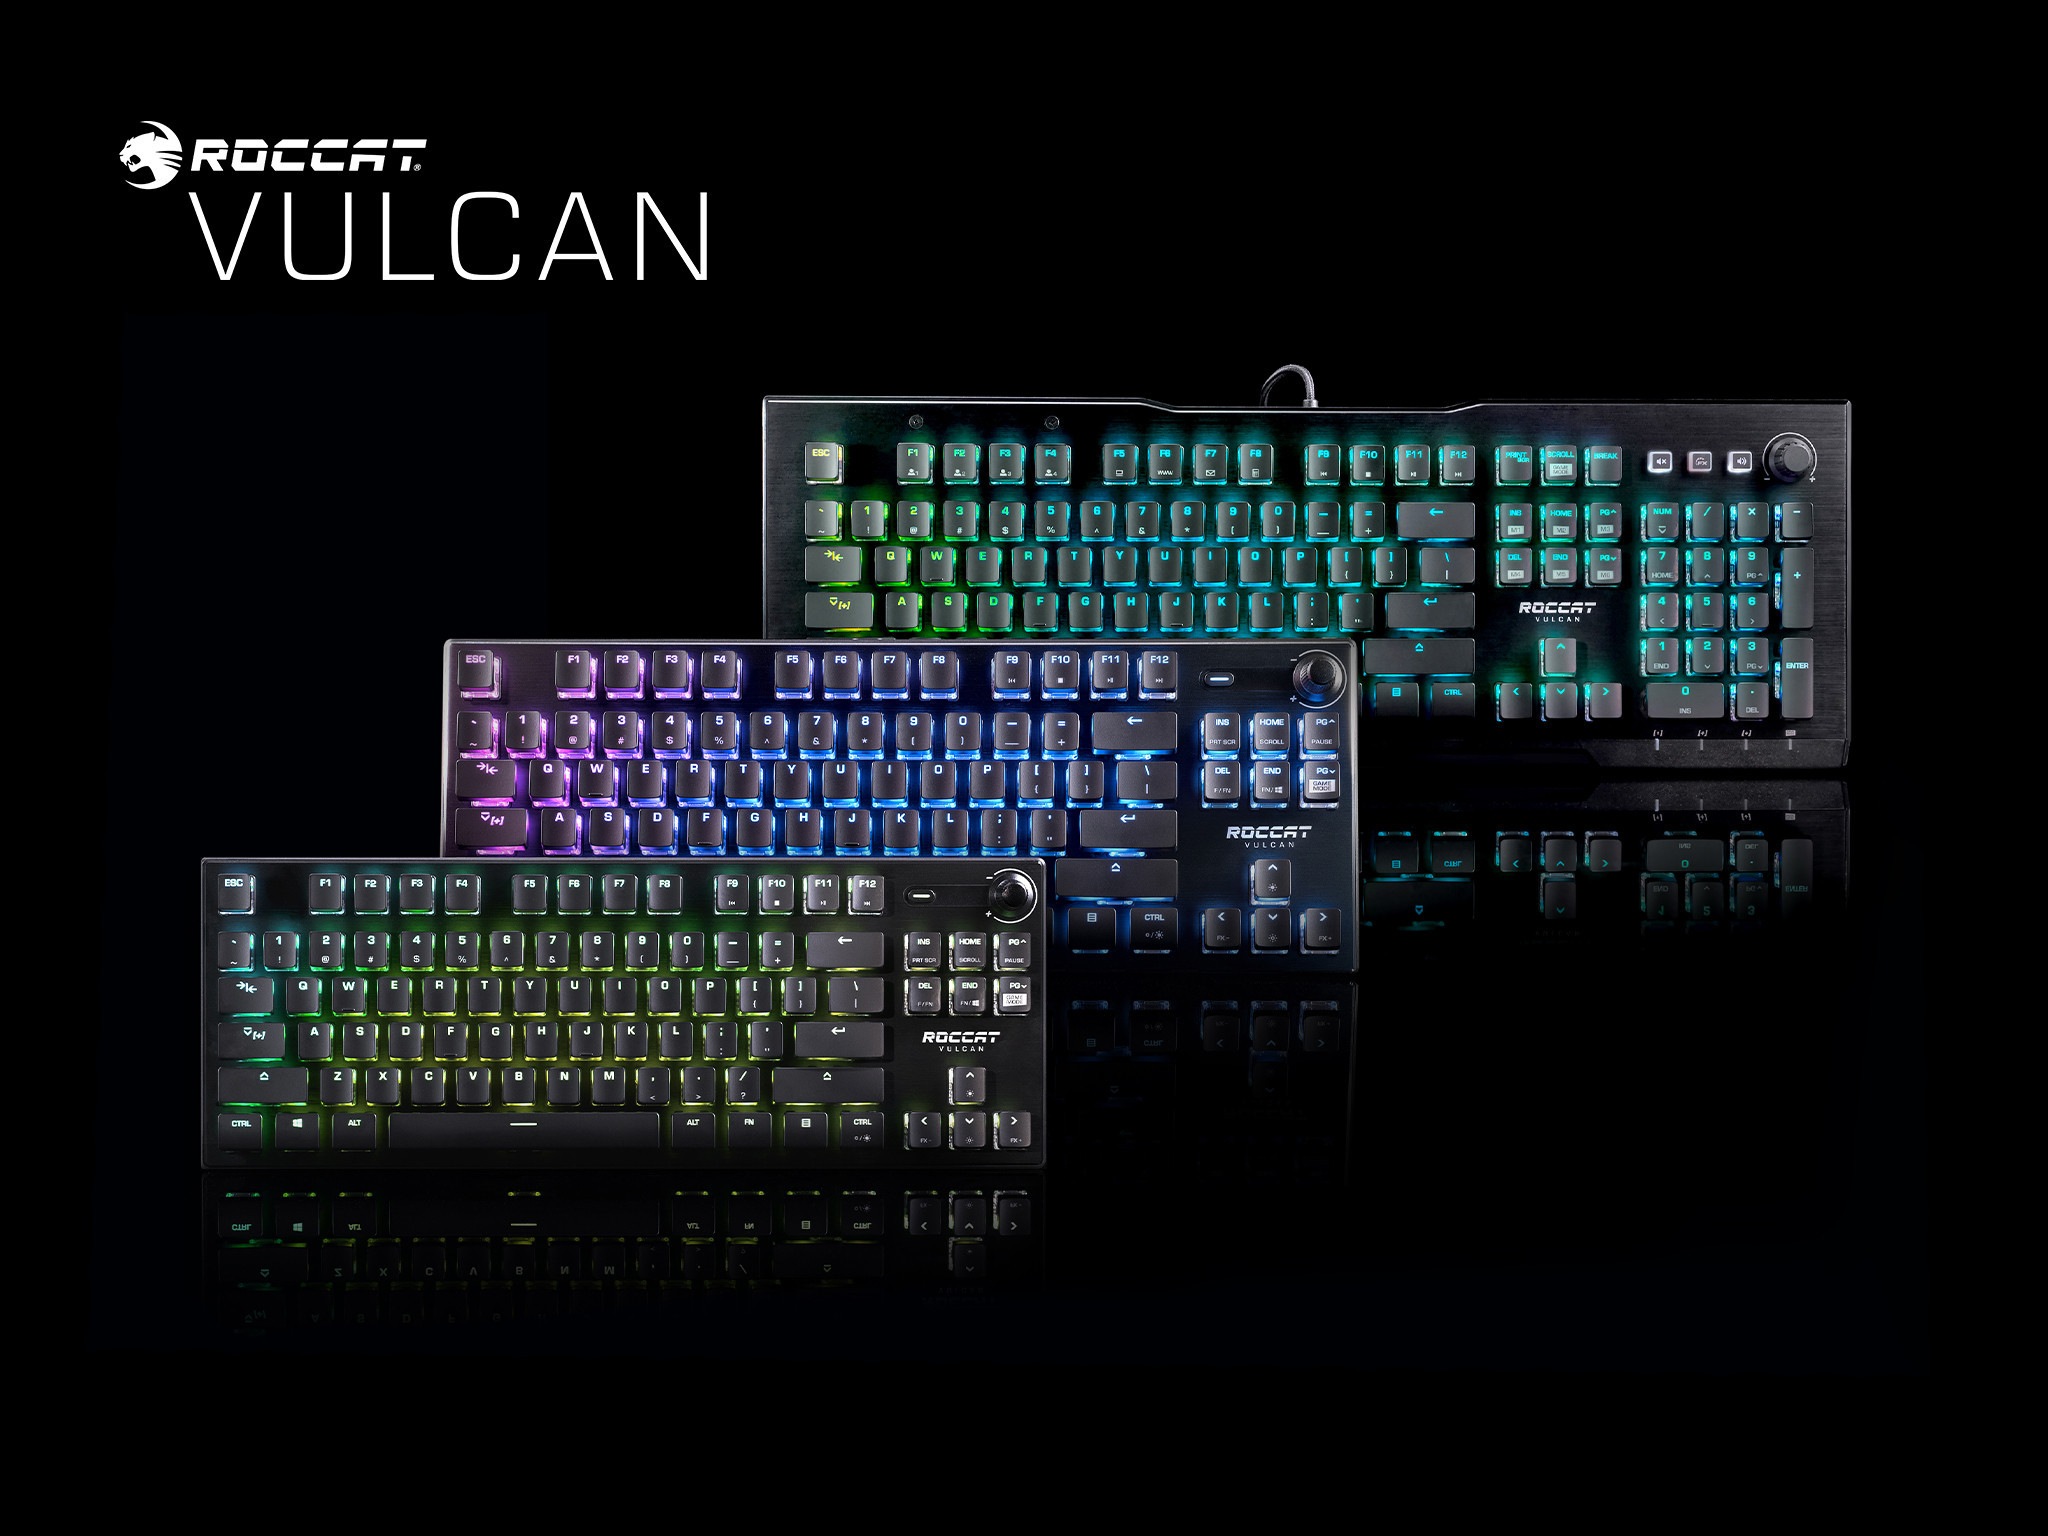 Vulcan keyboards image